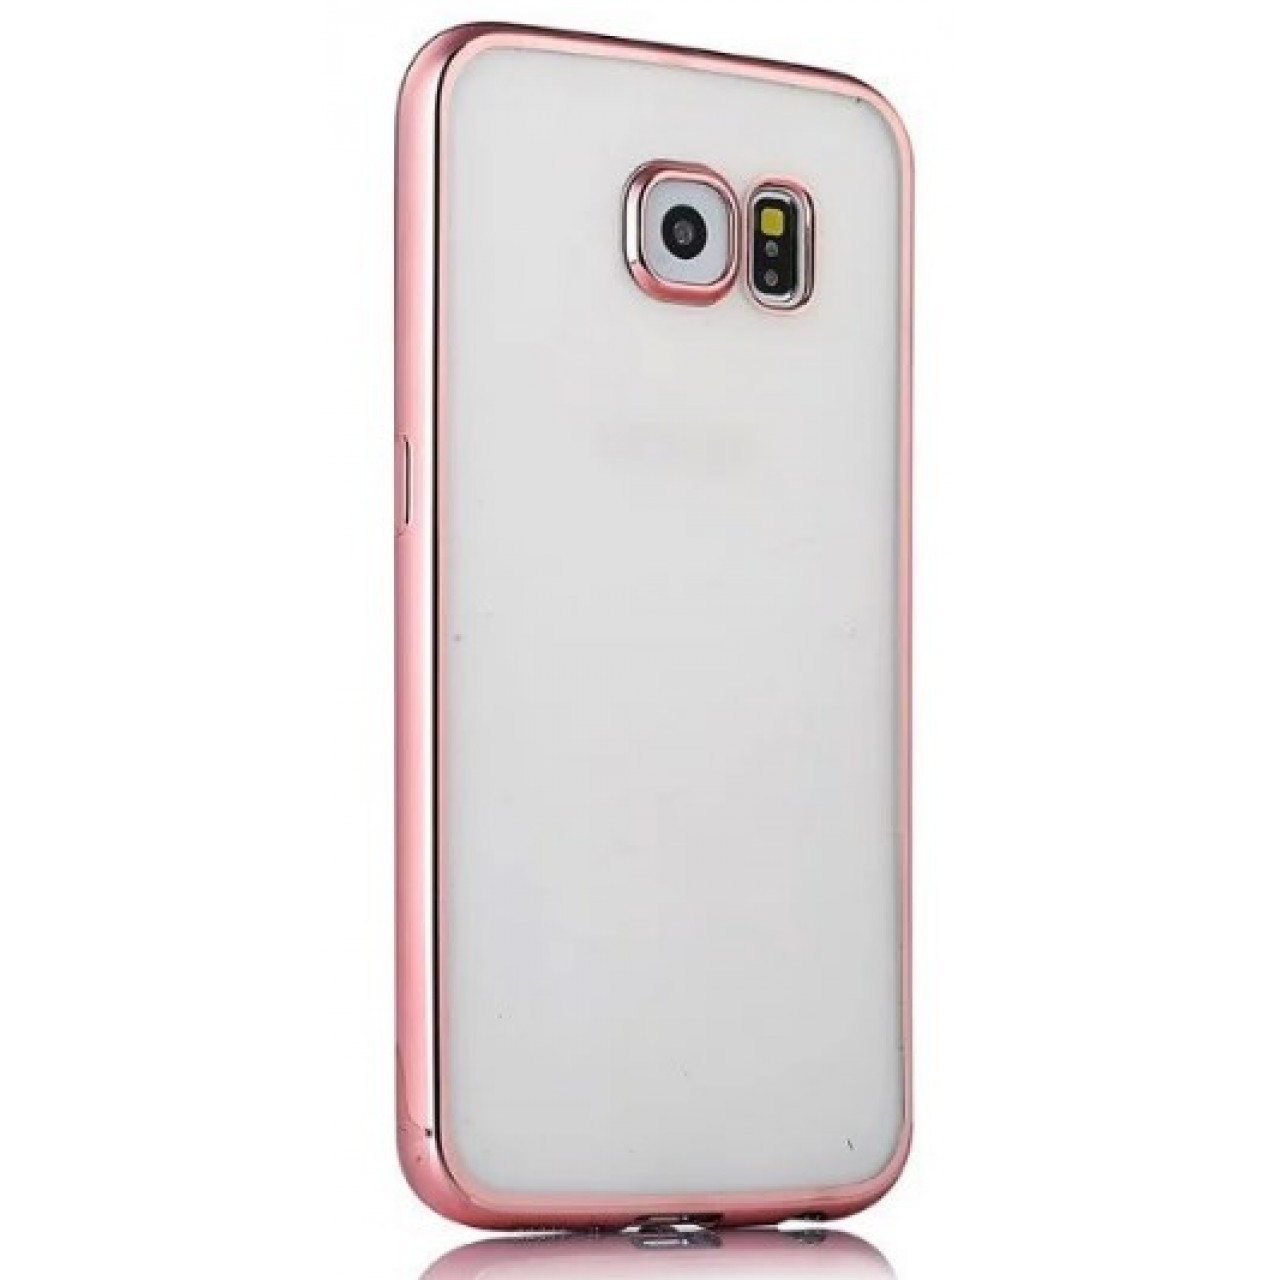 Θήκη Samsung Galaxy S6 Σιλικόνης TPU Πλαίσιο - 2223 - Ροζ Χρυσό - OEM